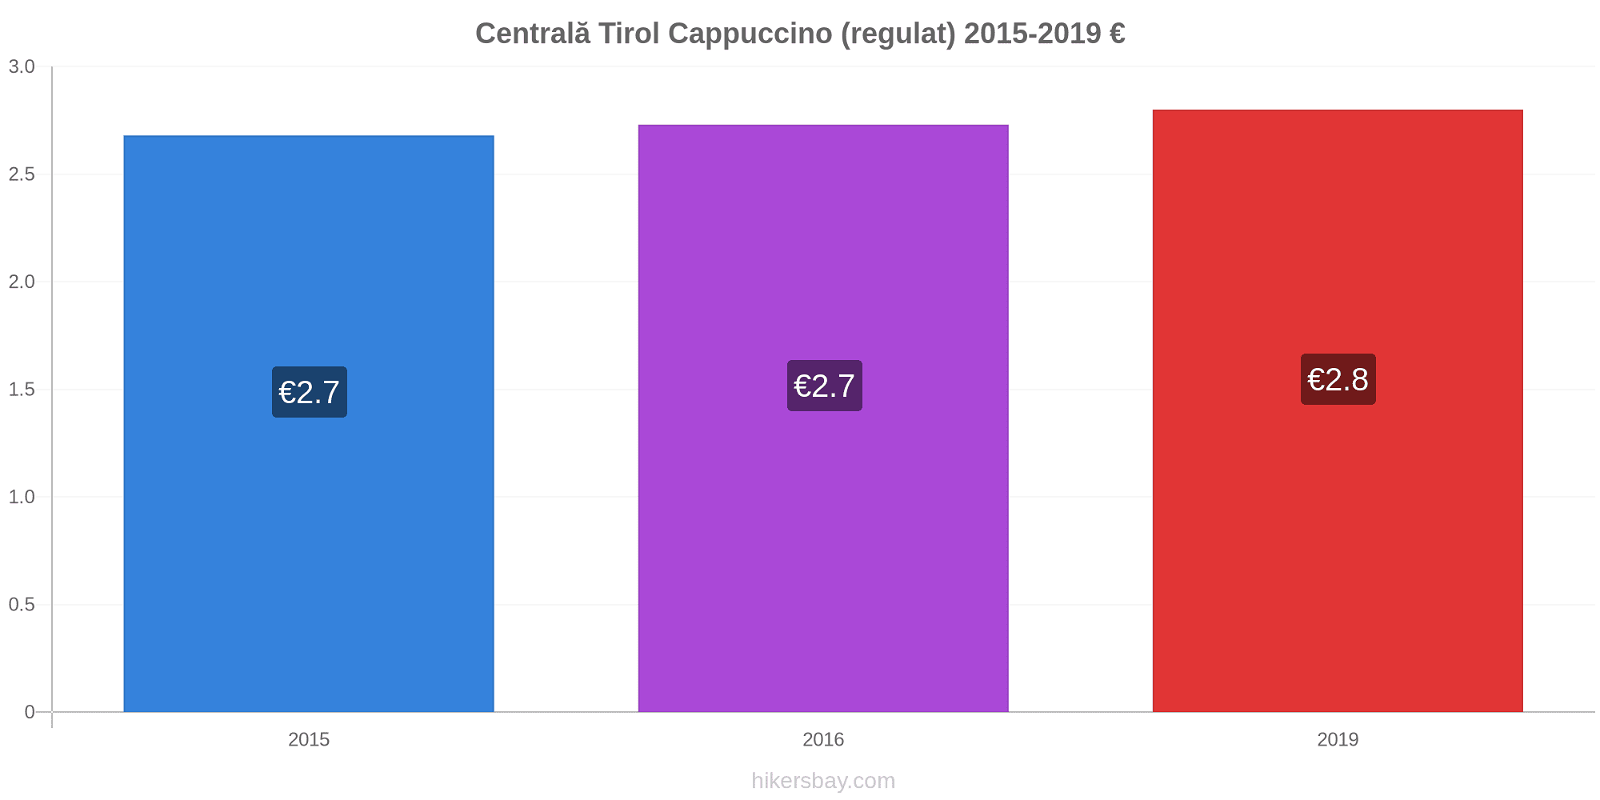 Centrală Tirol modificări de preț Cappuccino (regulat) hikersbay.com